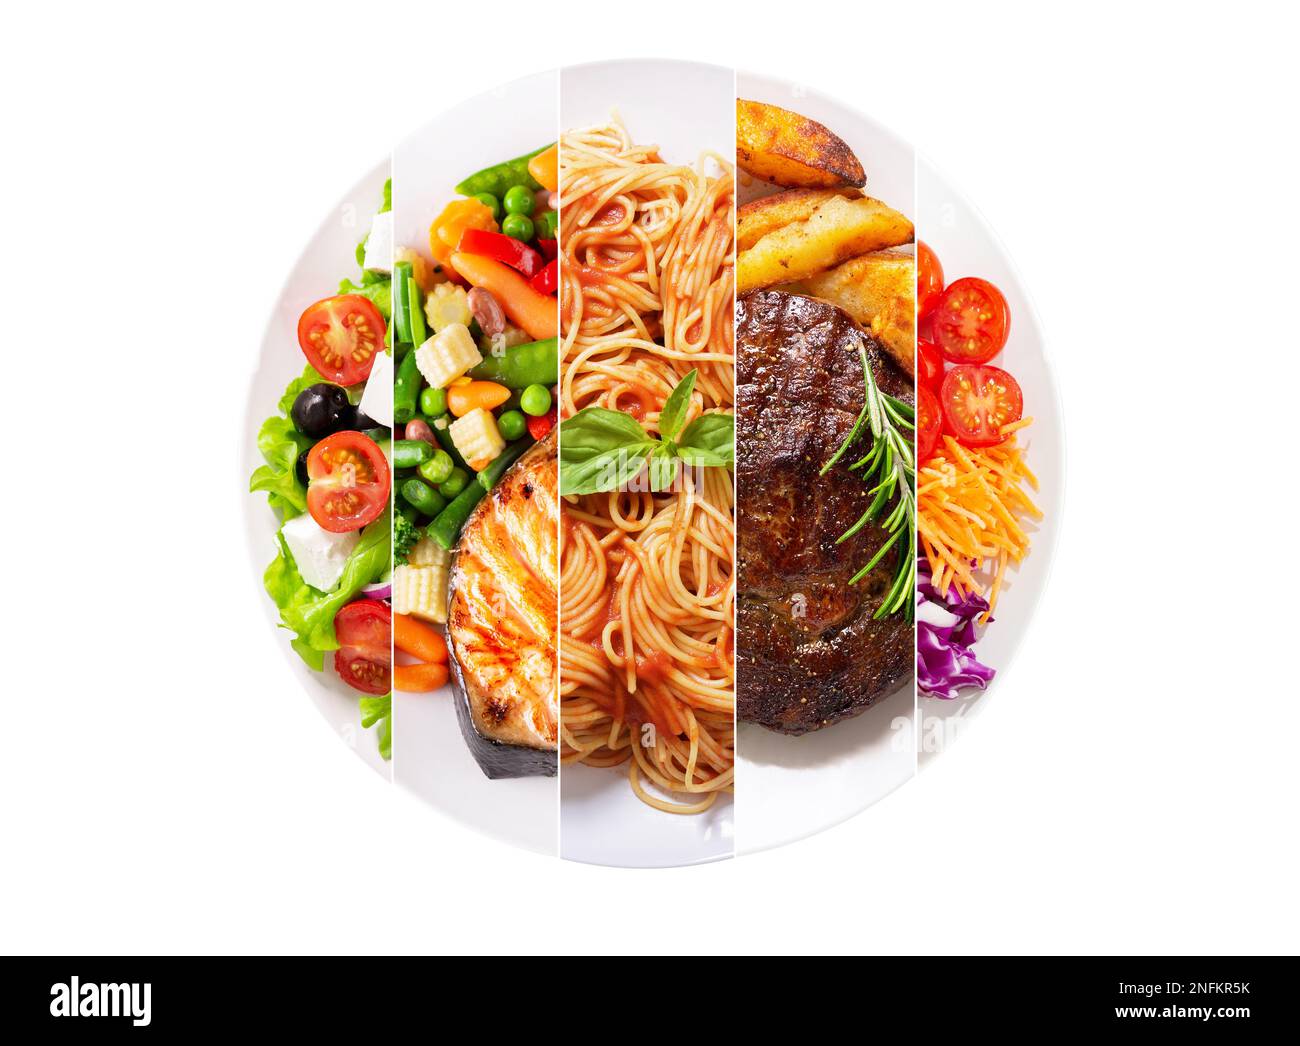 collage alimentaire de divers repas dans une assiette isolée sur fond blanc Banque D'Images